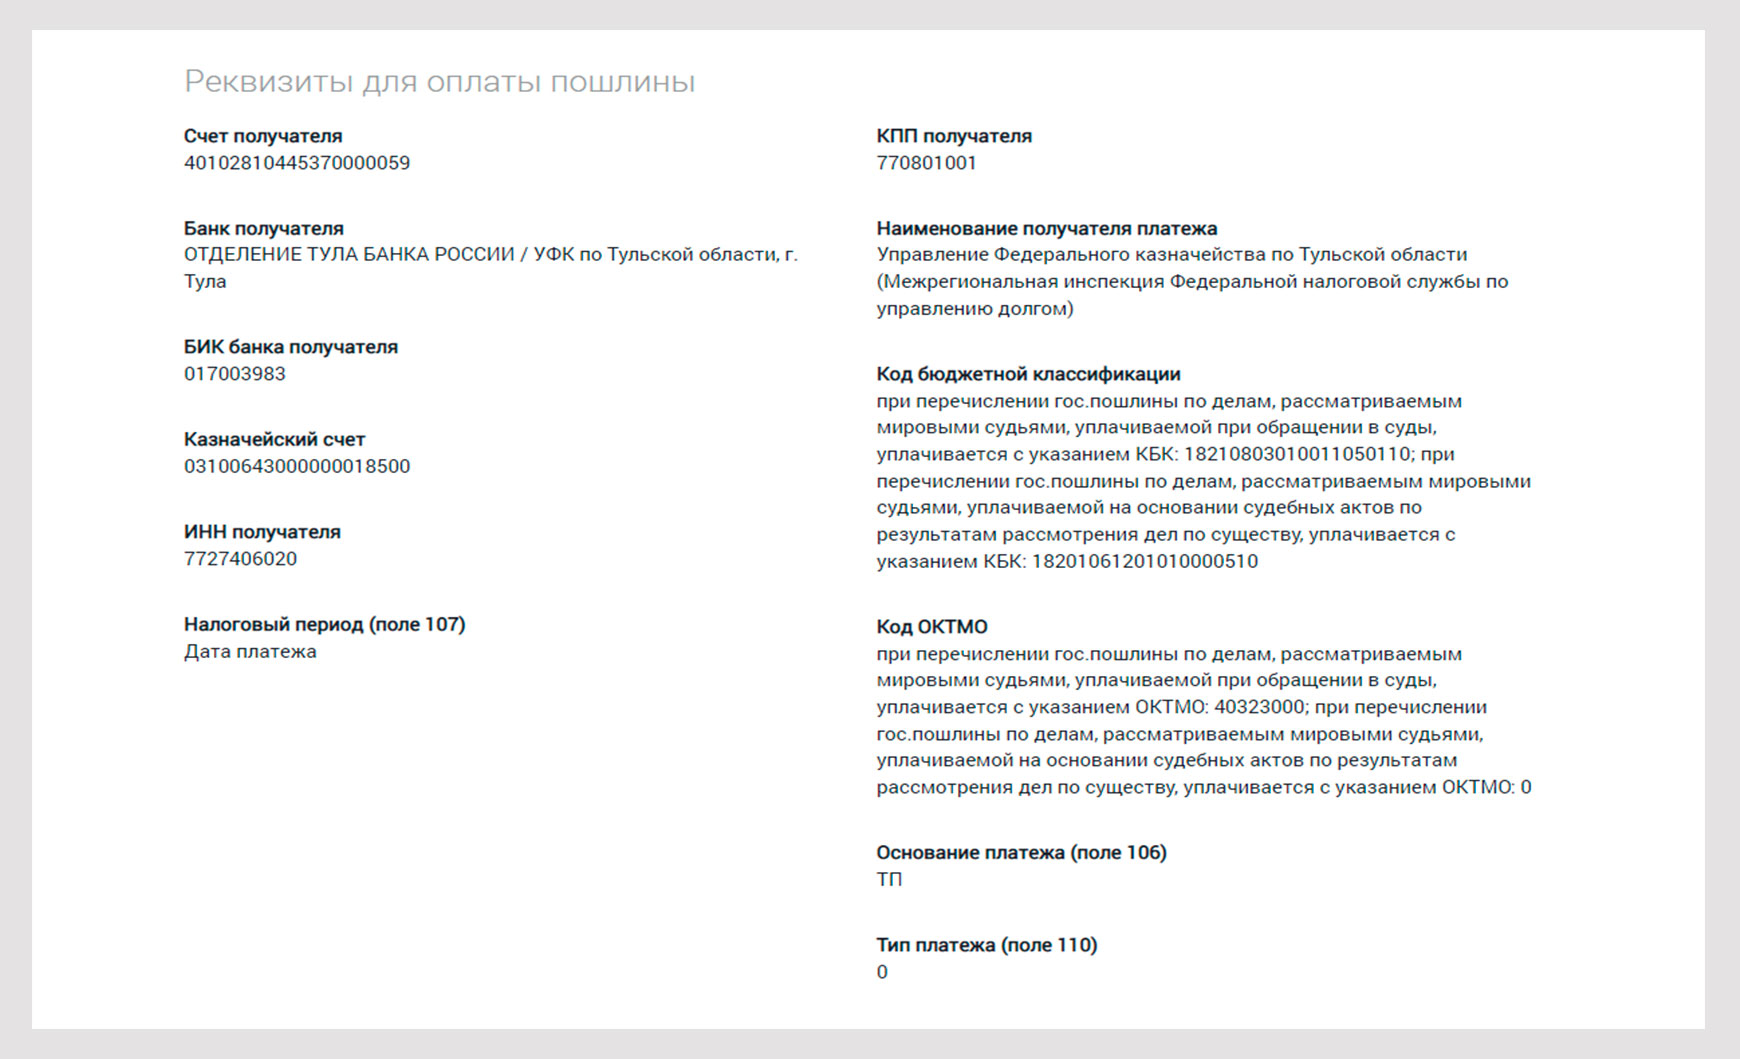 Реквизиты для оплаты пошлины по 161 судебному участку СПб.